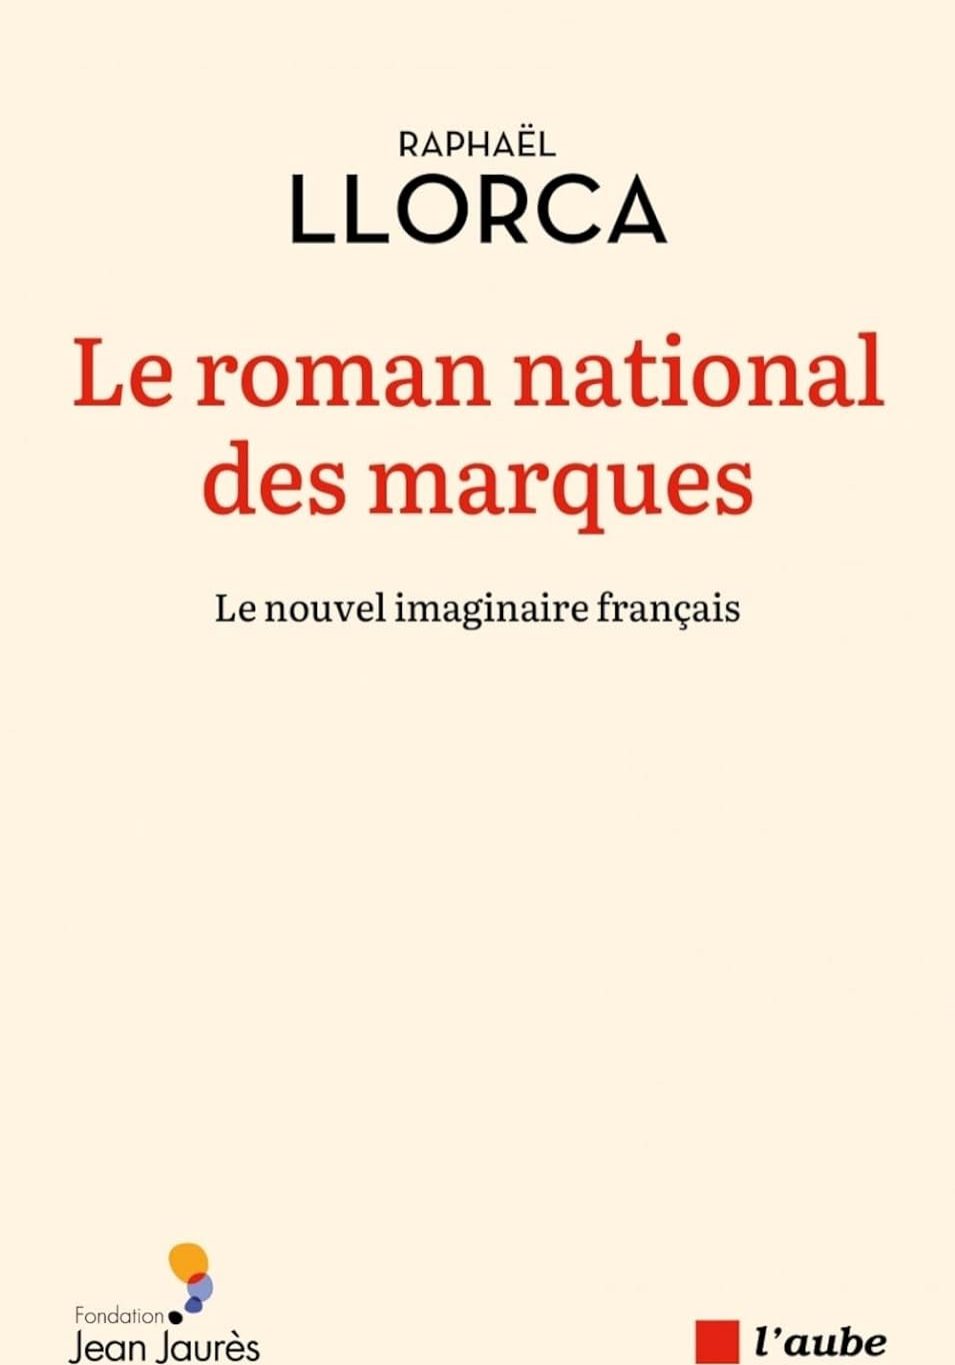 Raphaël Llorca_Le roman national des marques